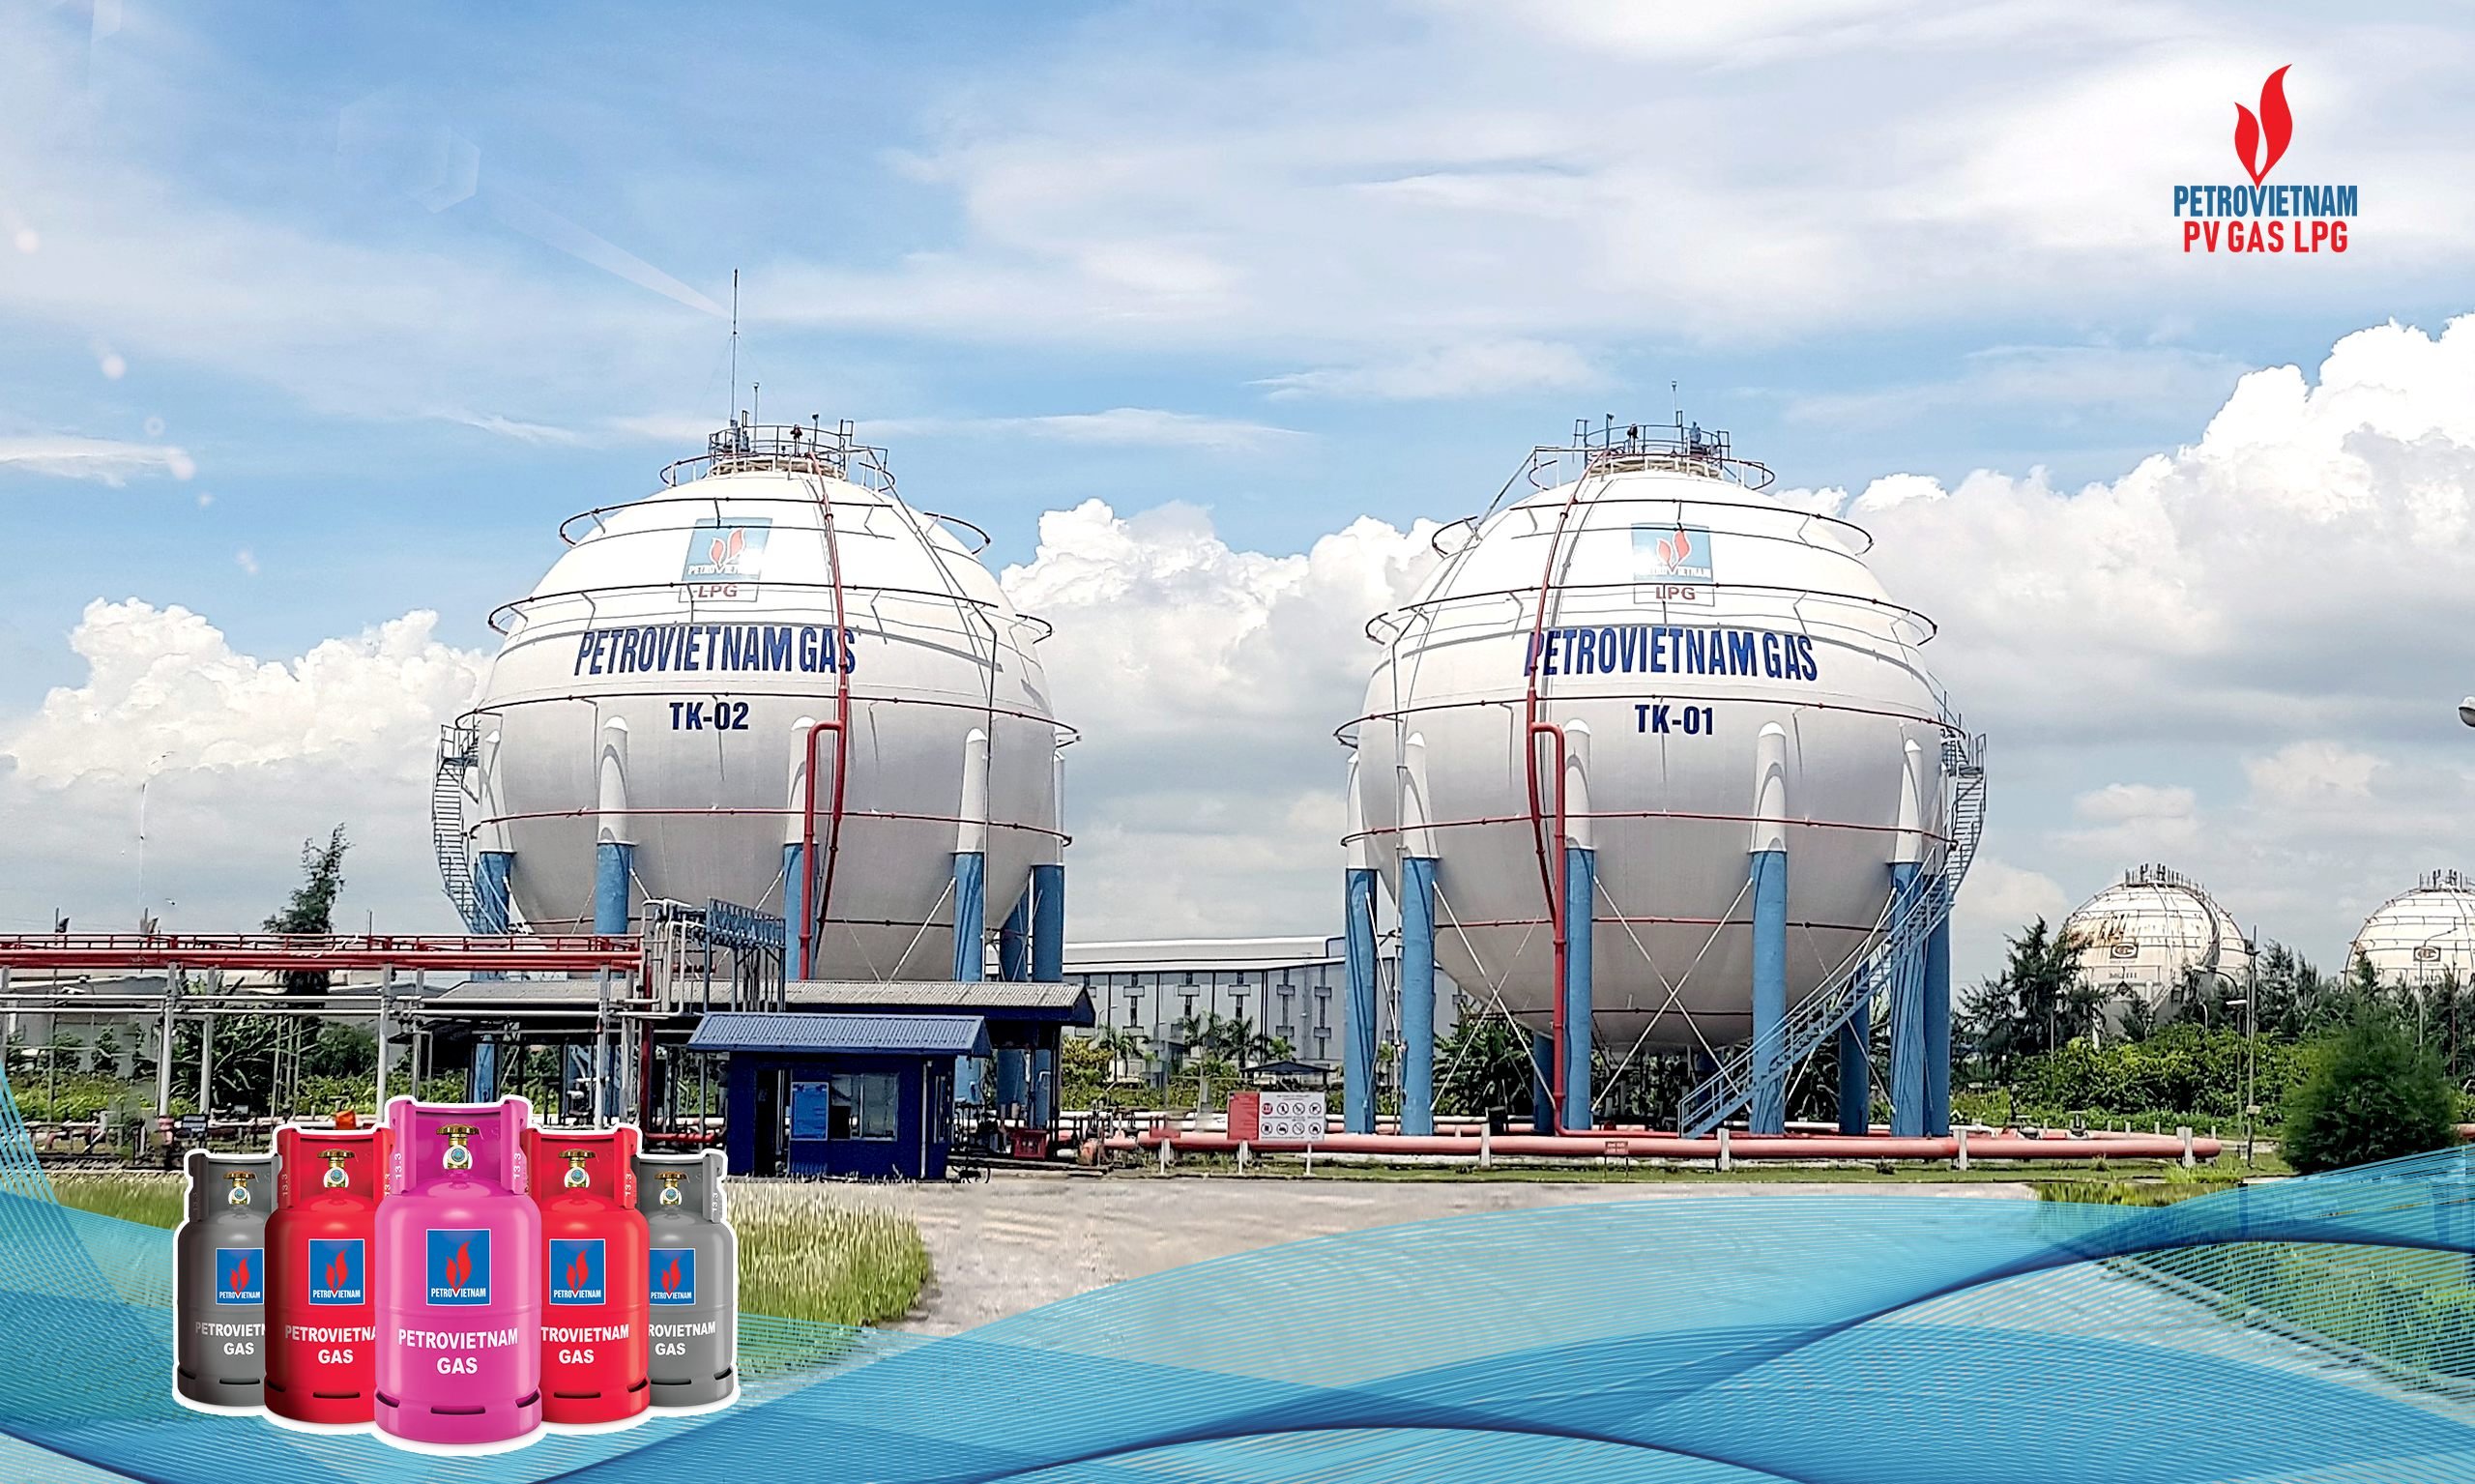 PV GAS LPG hiện là đơn vị duy nhất thuộc Tập đoàn Dầu khí Việt Nam và Tổng Công ty Khí Việt Nam được phép sản xuất và kinh doanh bình gas mang thương hiệu PETROVIETNAM GAS trên toàn lãnh thổ Việt Nam.